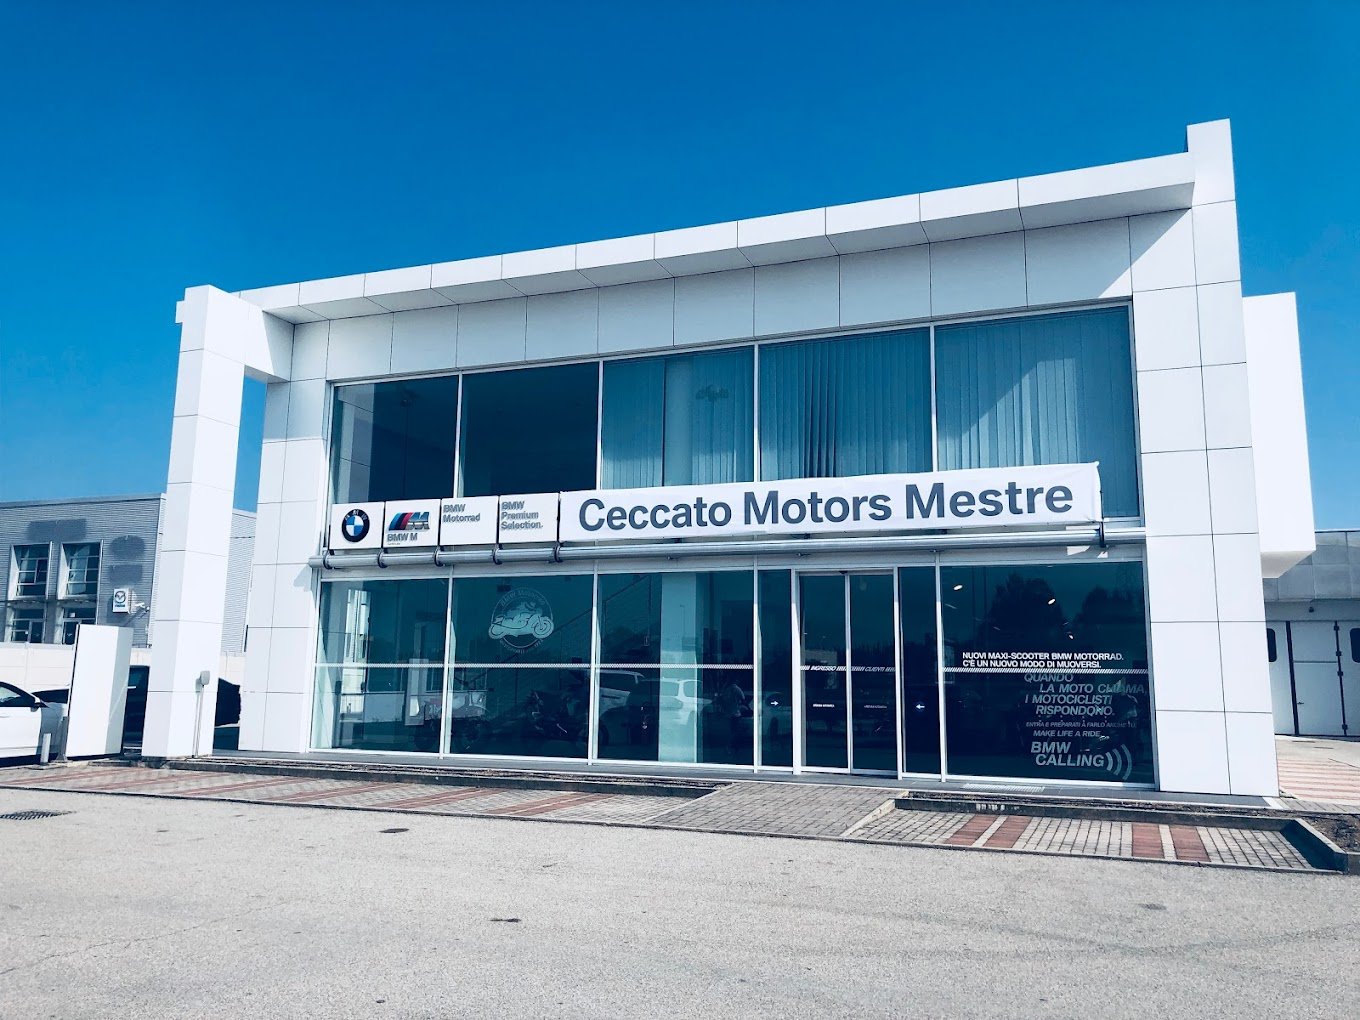 Ceccato Motors/Tridente Motors - Venezia Mestre